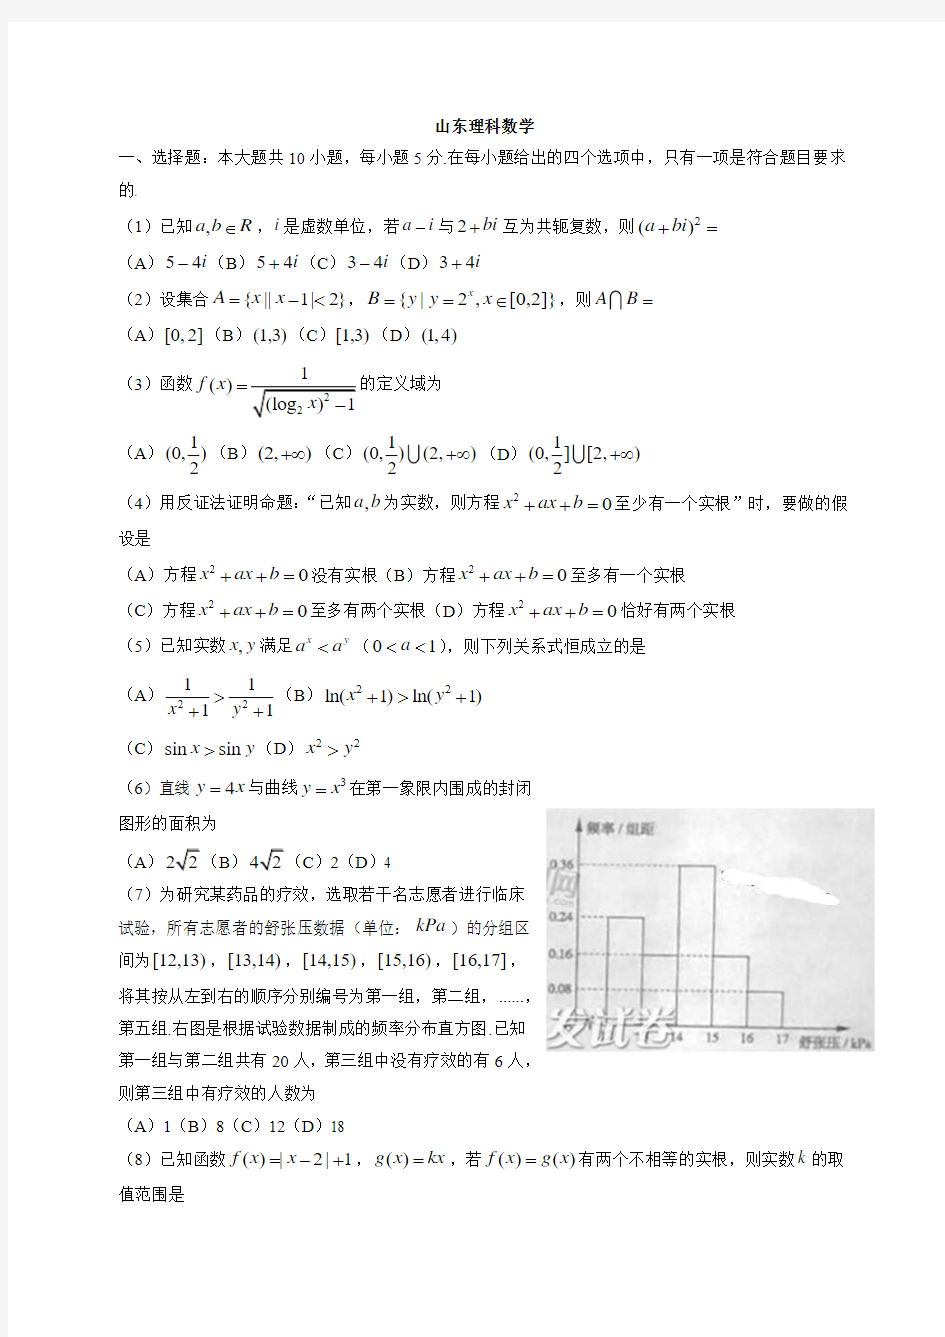 2014年高考真题——理科数学(山东卷)Word版含答案和小题解析